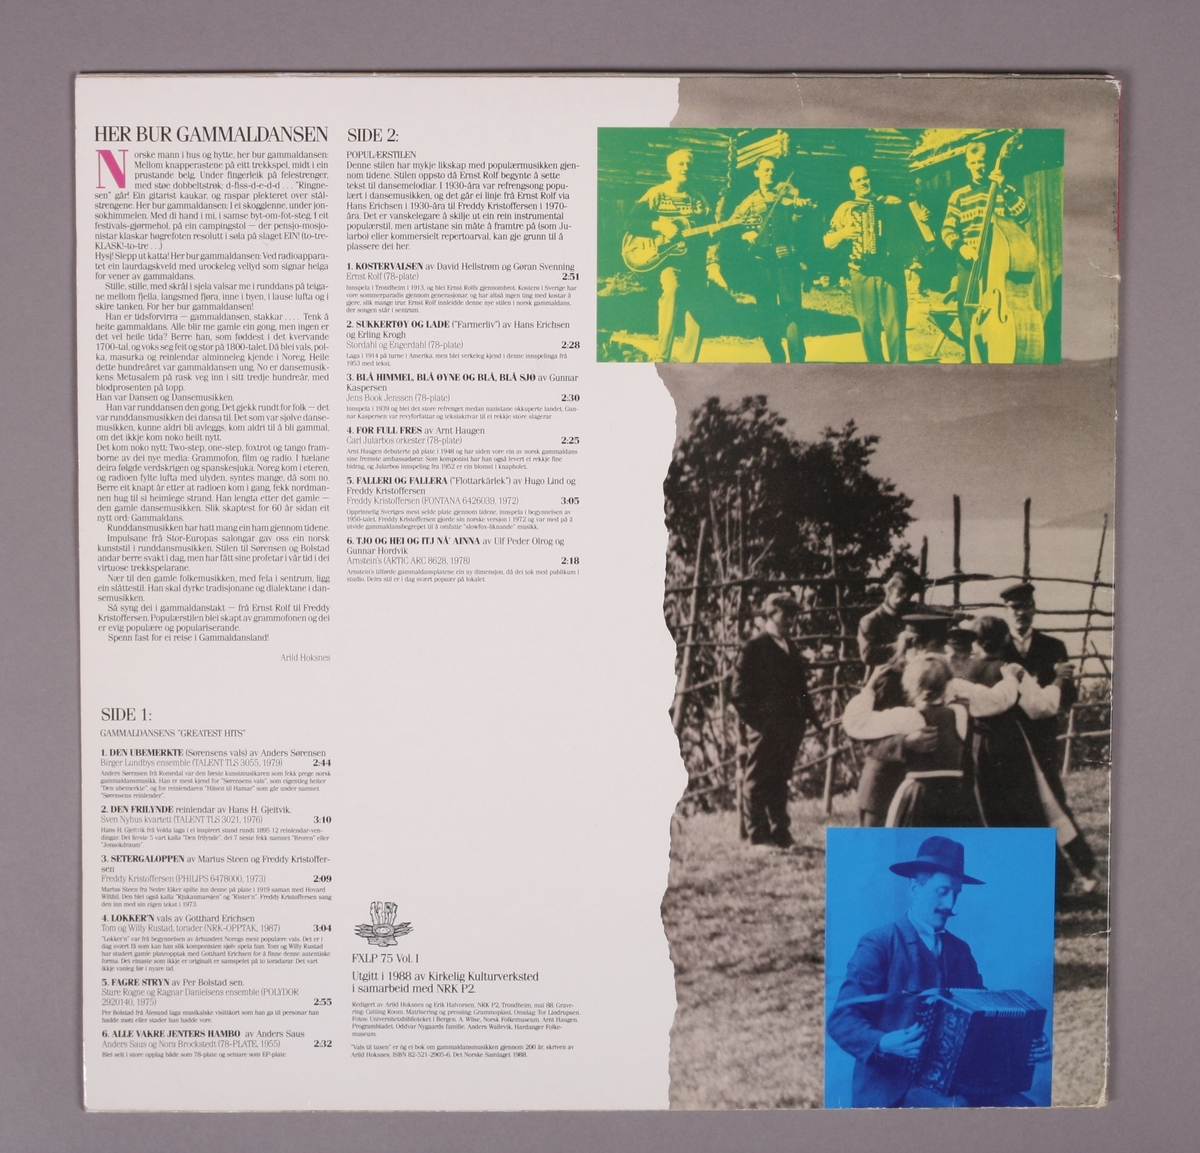 Grammofonplate i svart vinyl og plateomslag i papp. Vedlagt er også et postkort med teksten "Med Helsing Arild, Jorun Marie, Gunhild og Jonas på Risvollan" (se bilde). Plata ligger i en papirlomme med plastfôr.